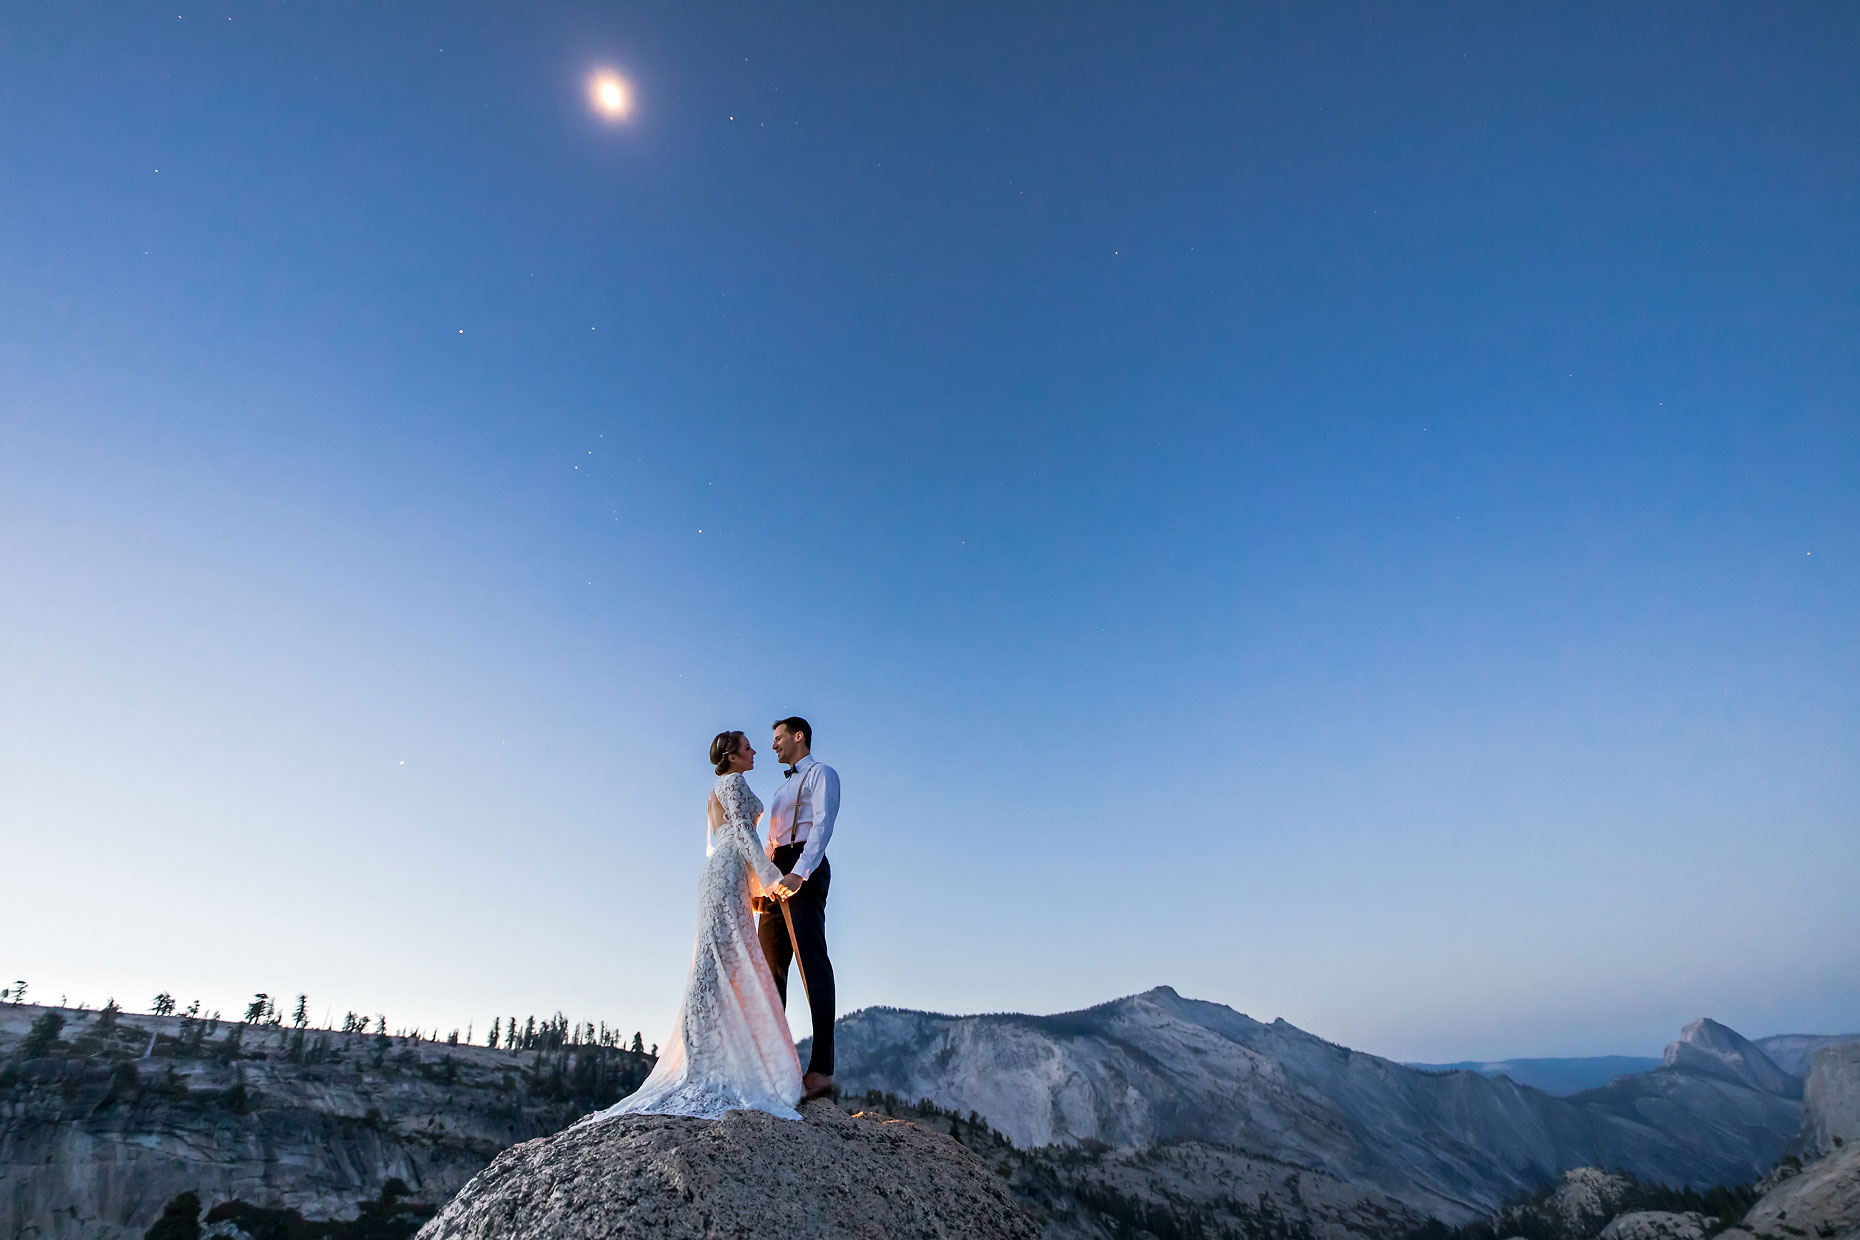 Tuolumne intimate wedding photography with moon.